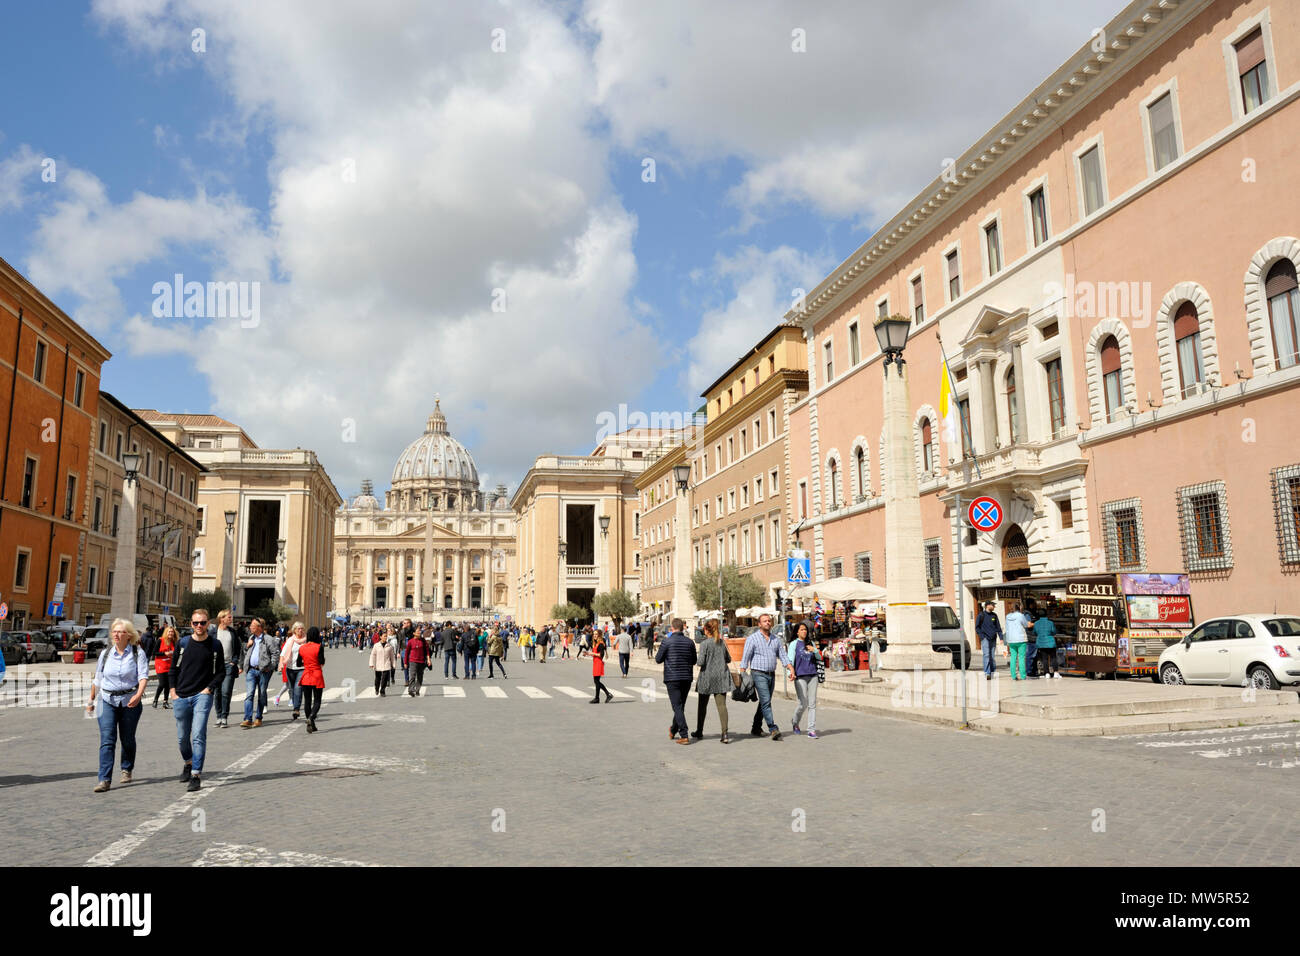 italy, rome, via della conciliazione, palazzo dei convertendi and st peter's basilica Stock Photo